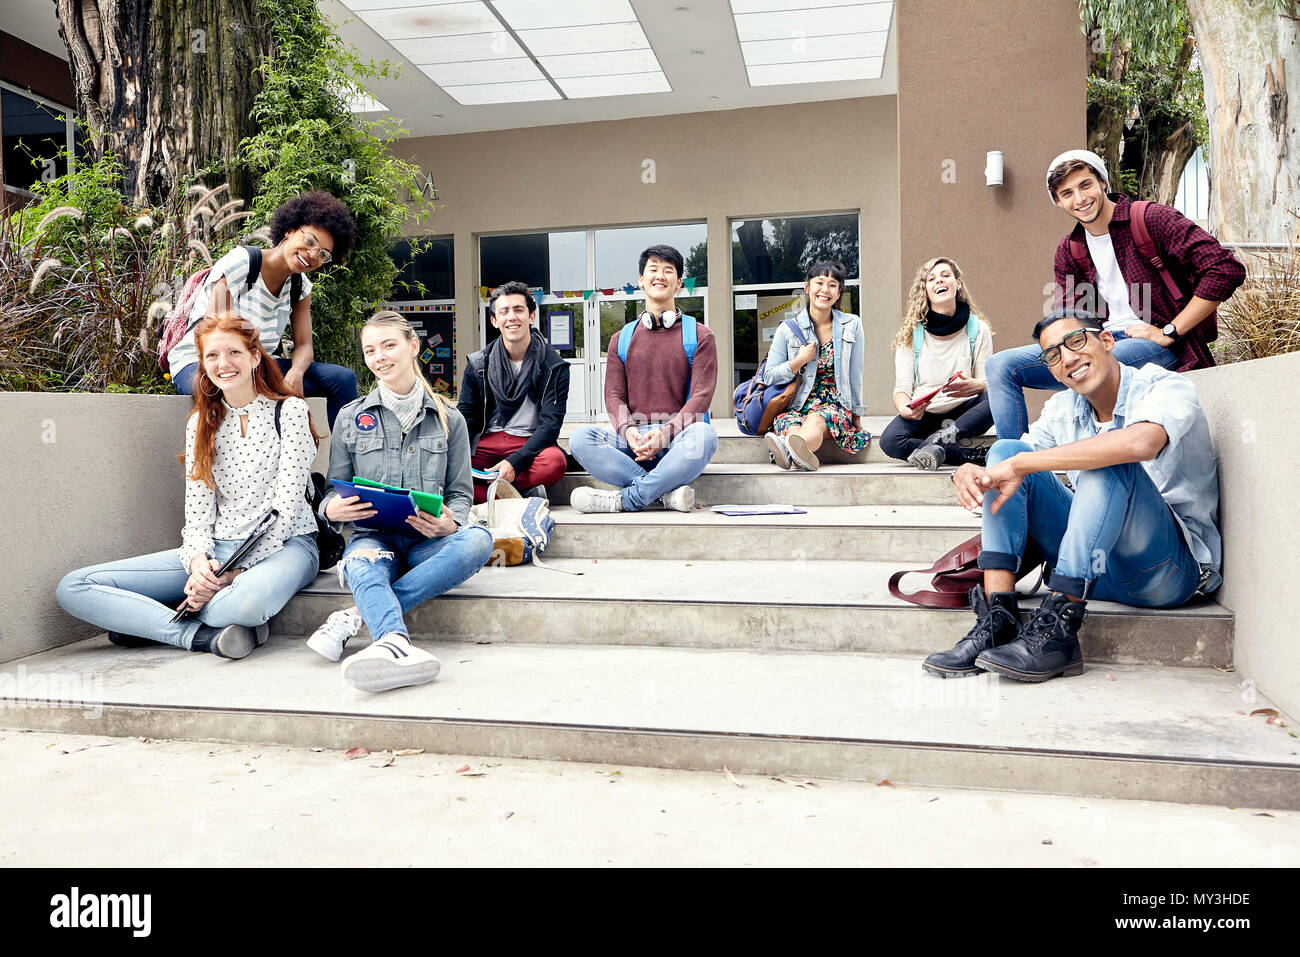 Studenti del college seduti sui gradini fuori dall'edificio, ritratto Foto Stock